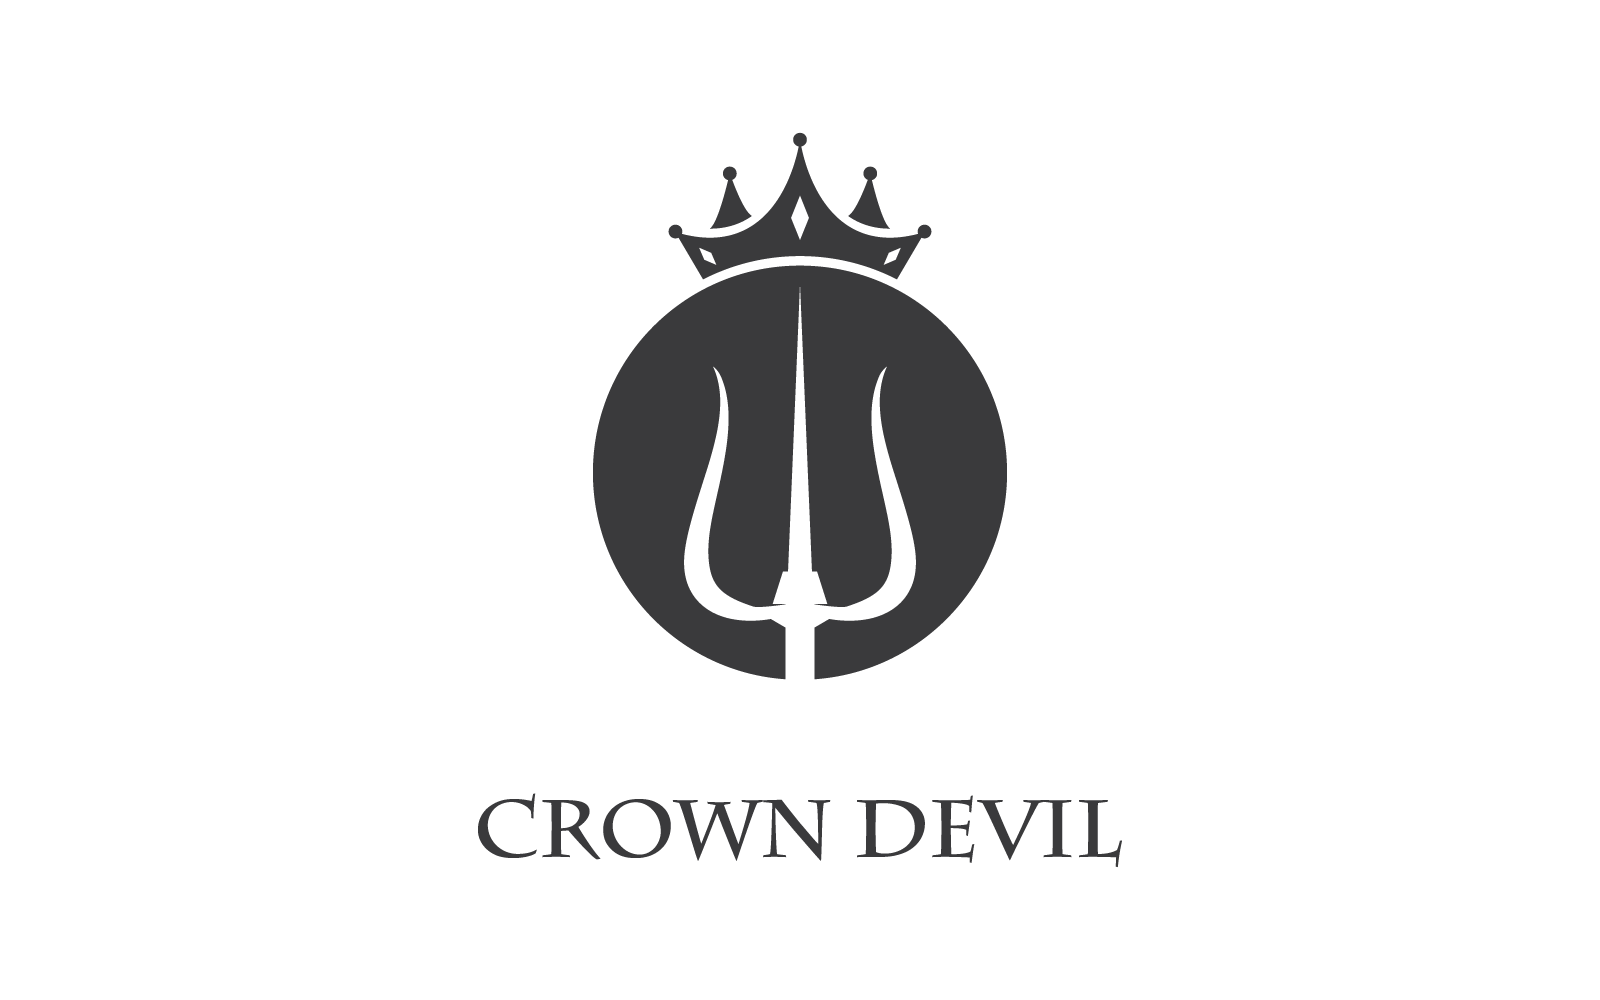 Trident en kroon logo vector plat ontwerp